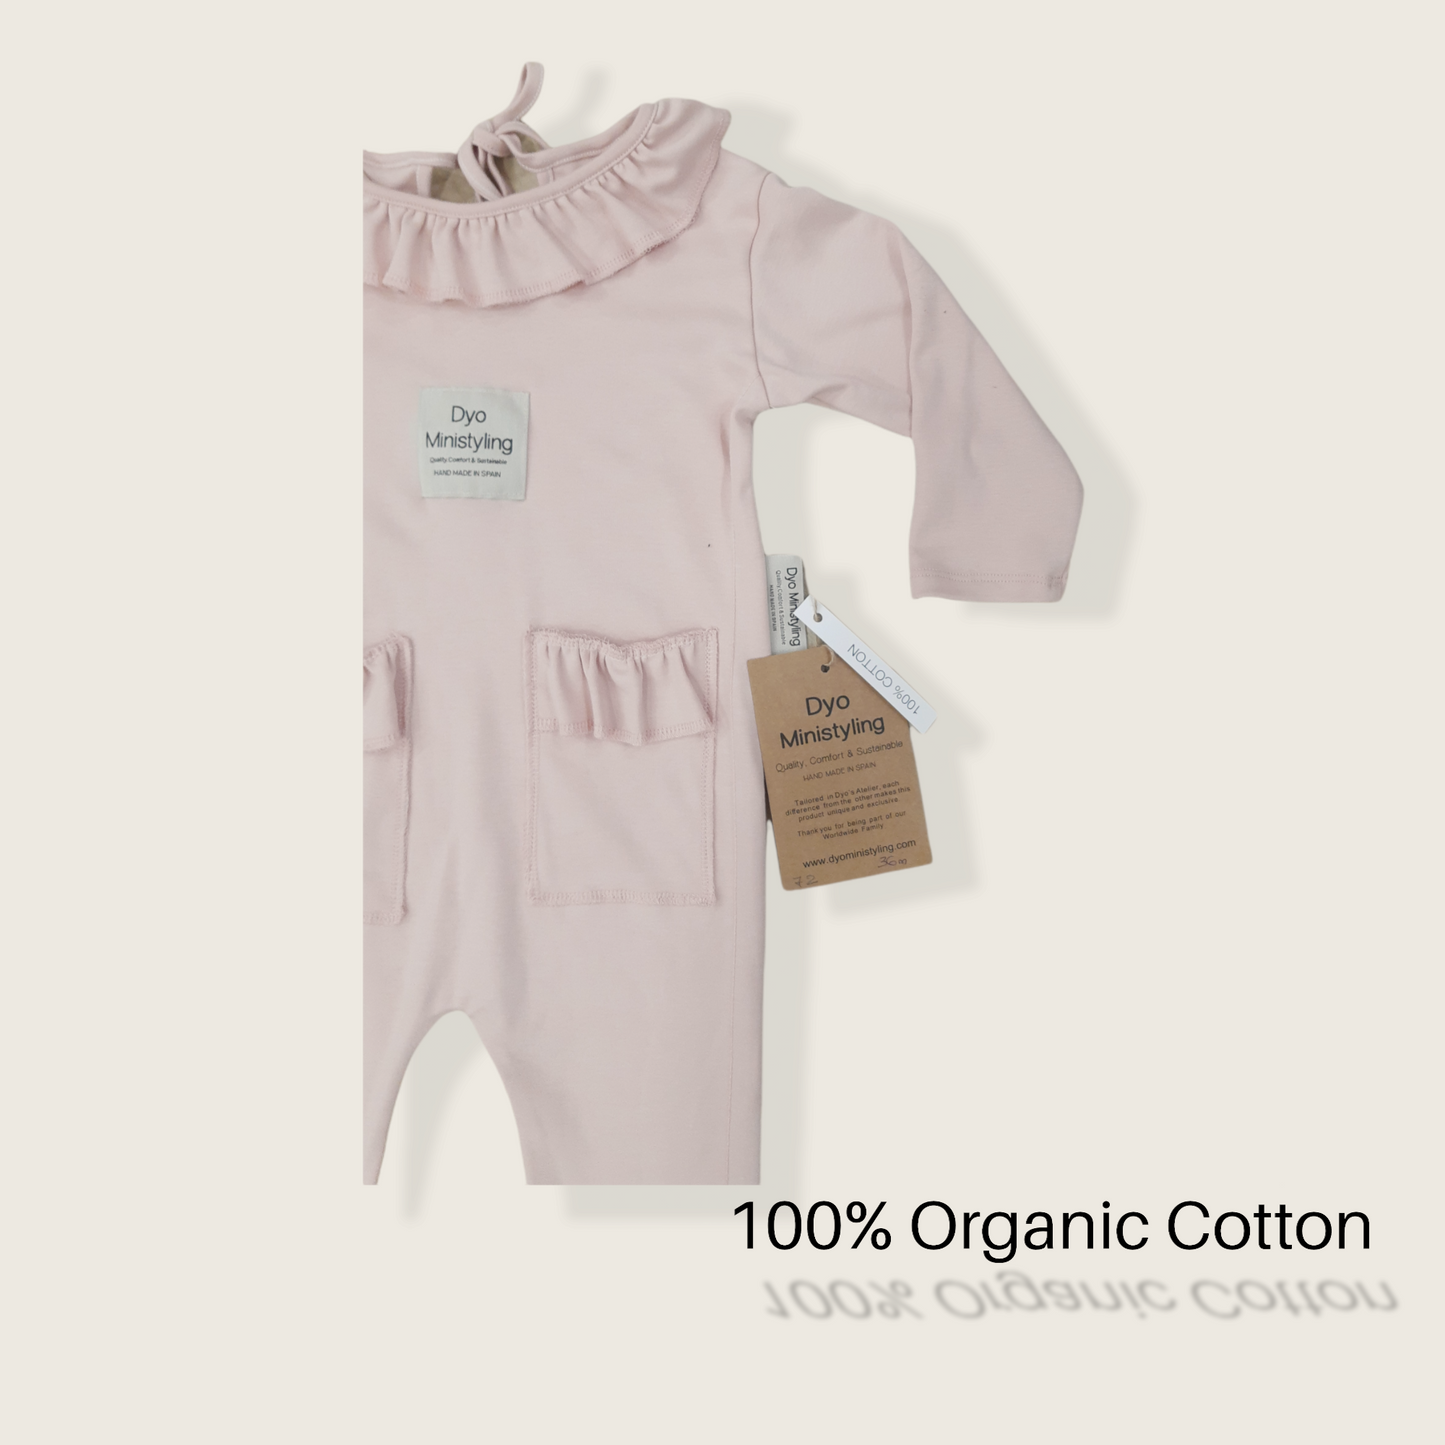 Mono infantil rosa/ Diseño sostenible y ecológico/ Moda infantil